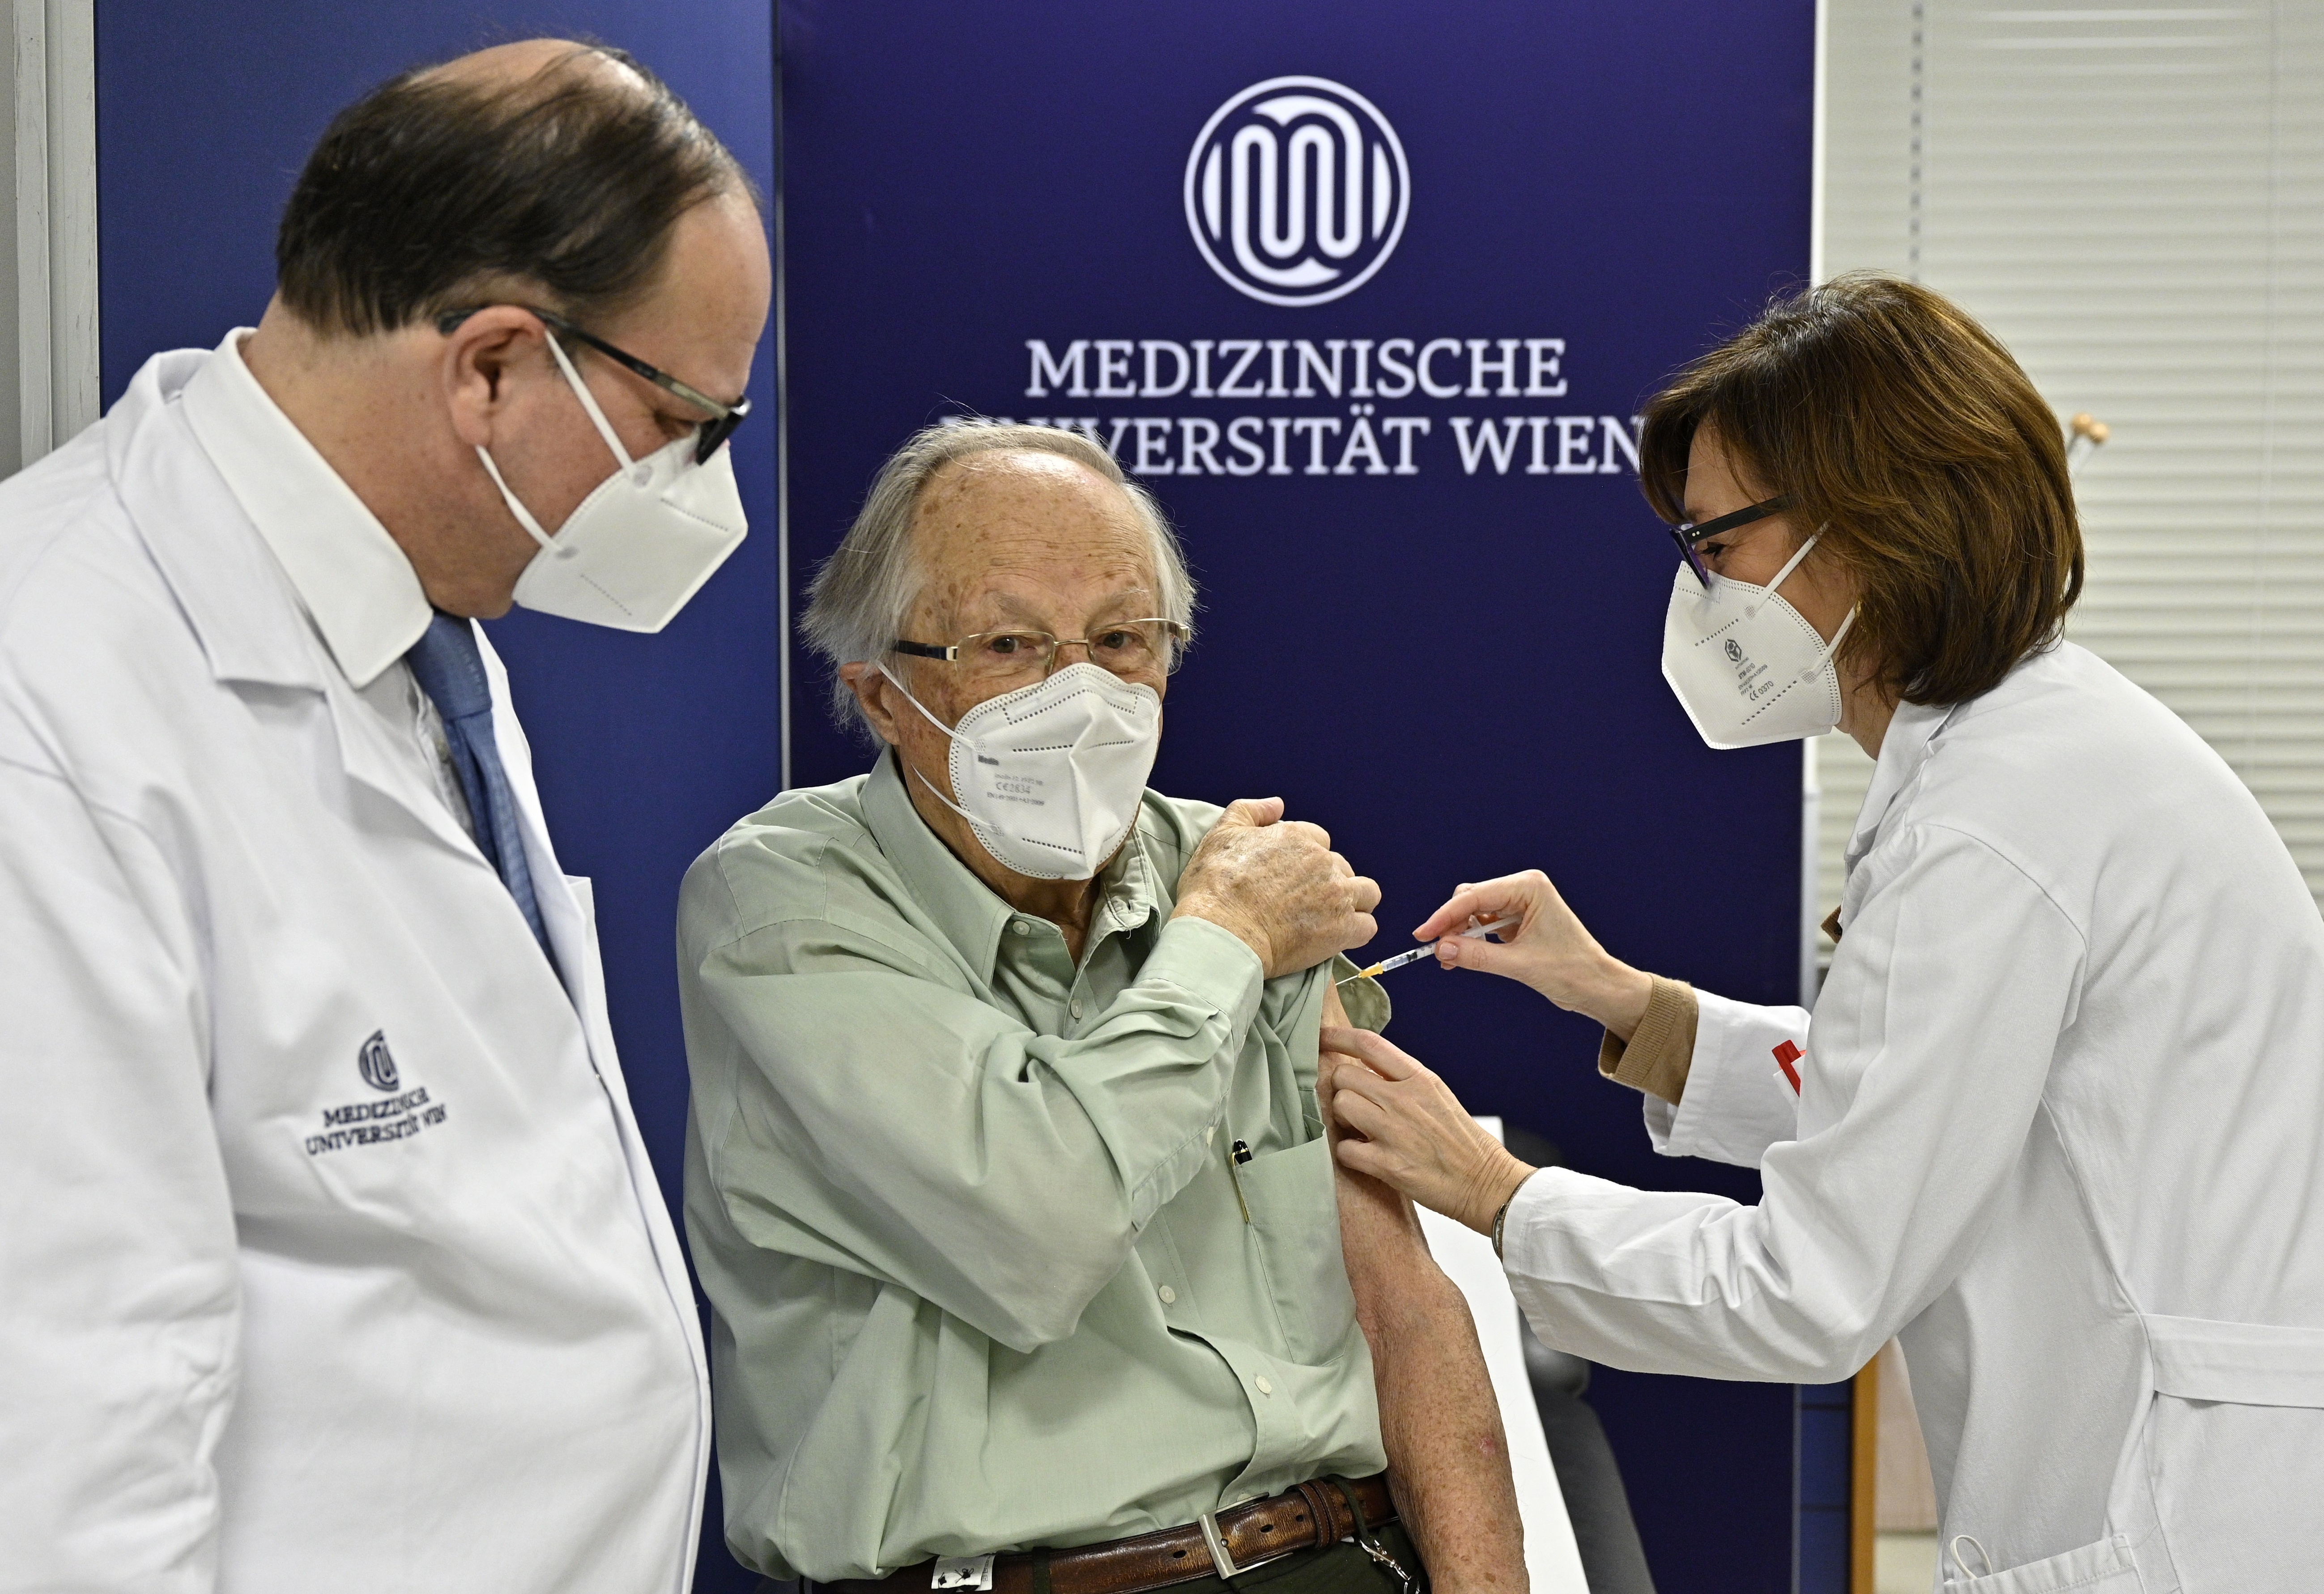 La vacuna lleva esperanza a Europa antes de las fiestas de fin de año